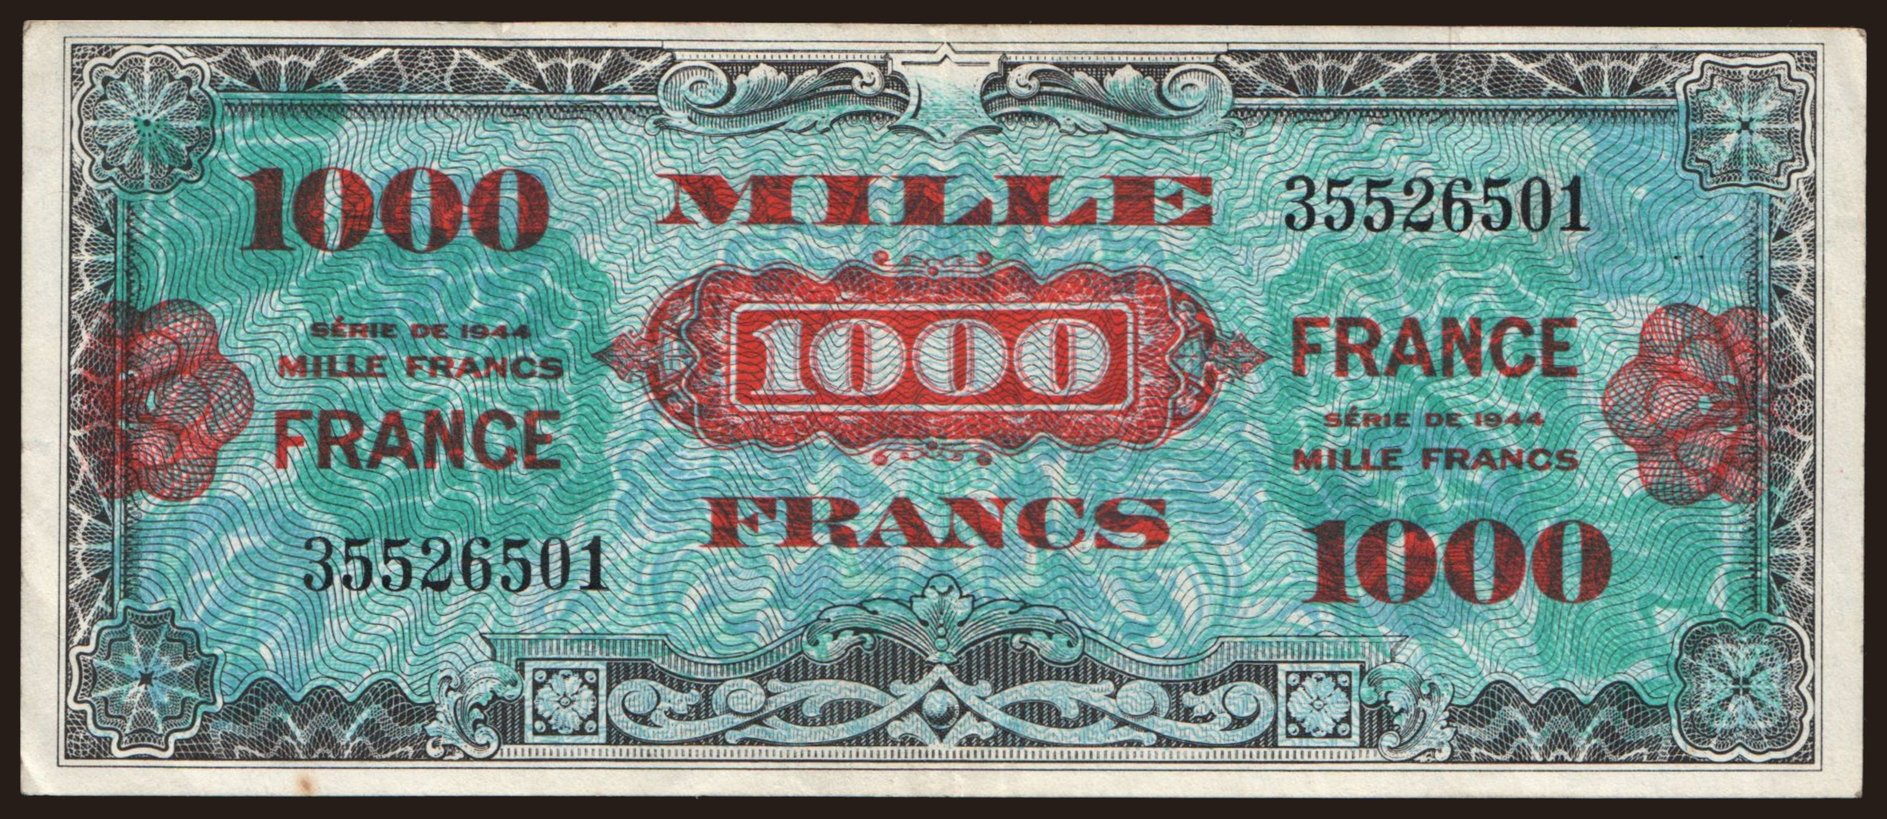 1000 francs, 1944